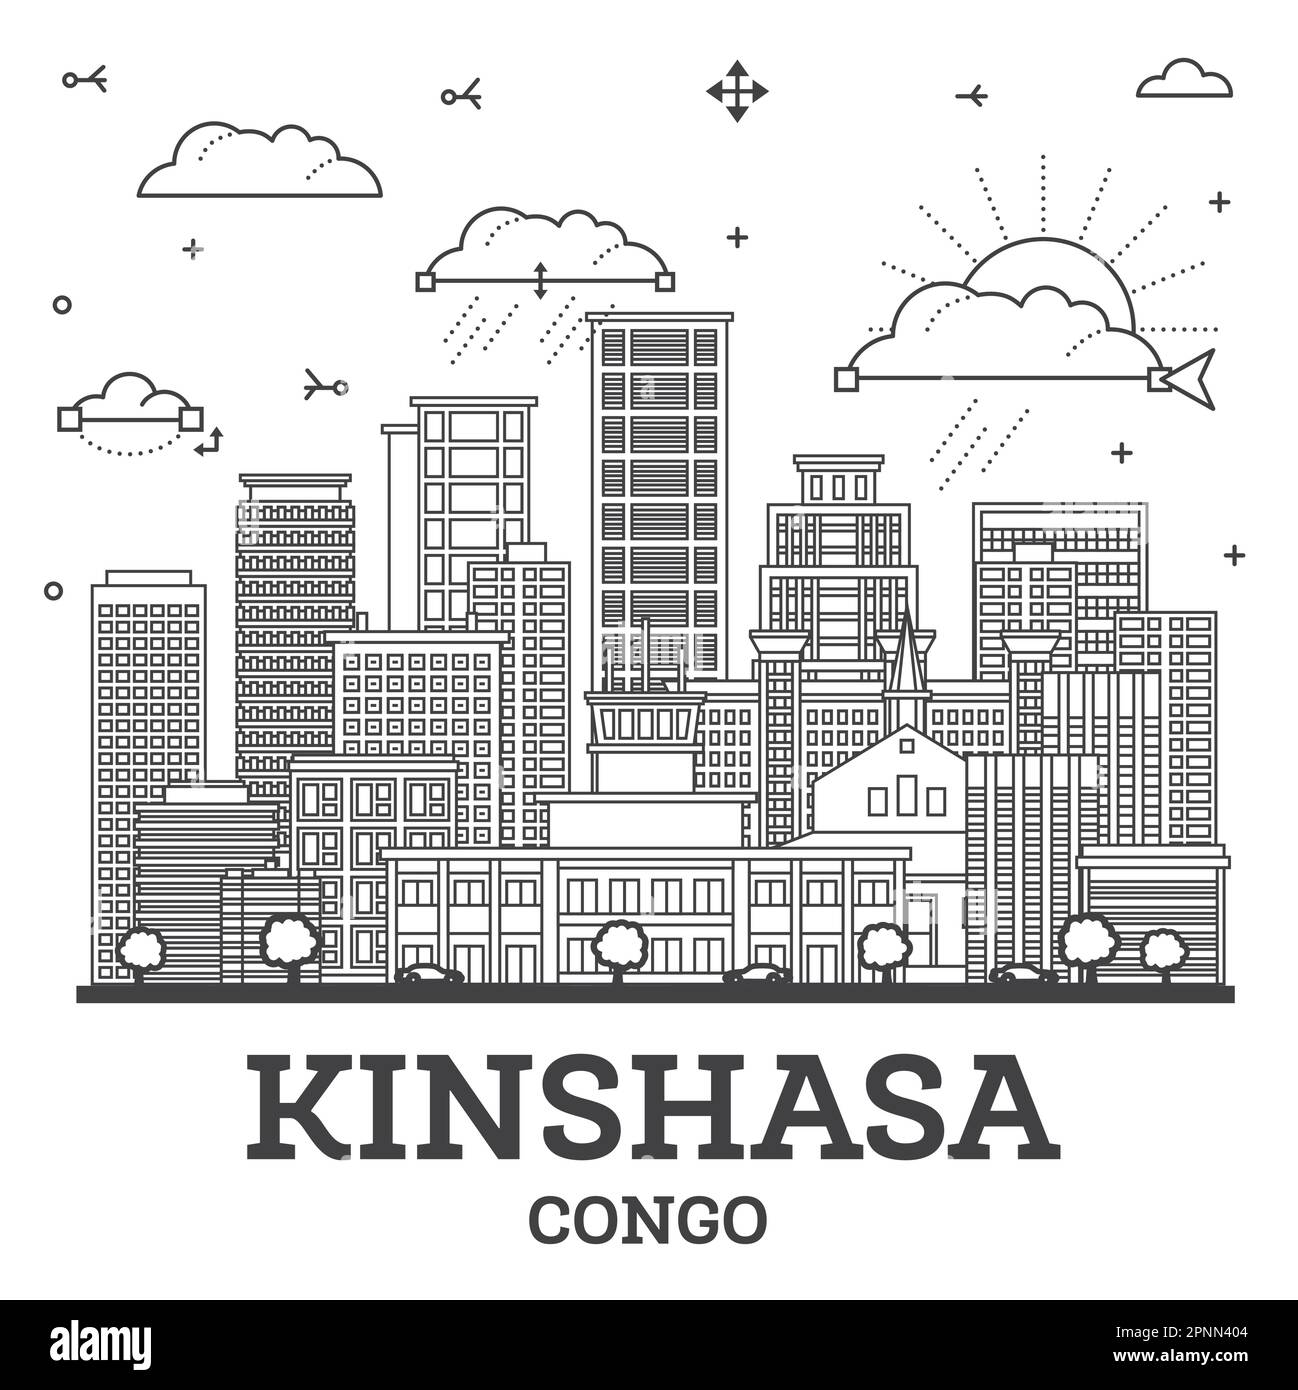 Skizzieren Sie Kinshasa Congo City Skyline mit modernen und historischen Gebäuden isoliert auf Weiß. Vektorgrafik. Kinshasa Afrika Stadtbild mit Landmark Stock Vektor